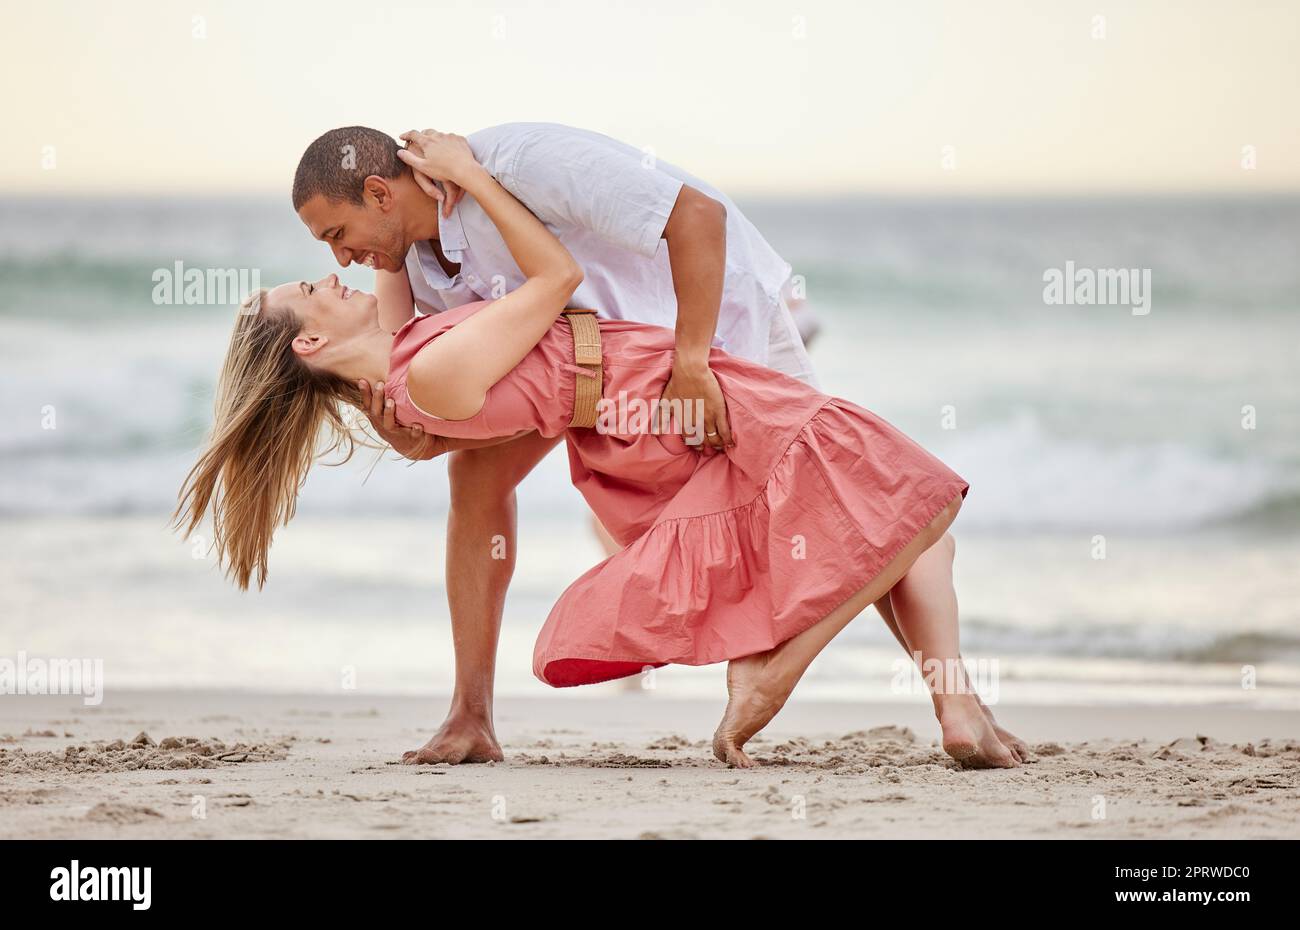 Liebe, Tanz und ein Paar, das im Sommer am Strand tanzt, feiern ihre Ehe, ihr Glück und ihre Flitterwochen. Lächeln, Sonnenuntergang und glückliche Frau, die eine gesunde Beziehung mit Partner auf See feiert Stockfoto